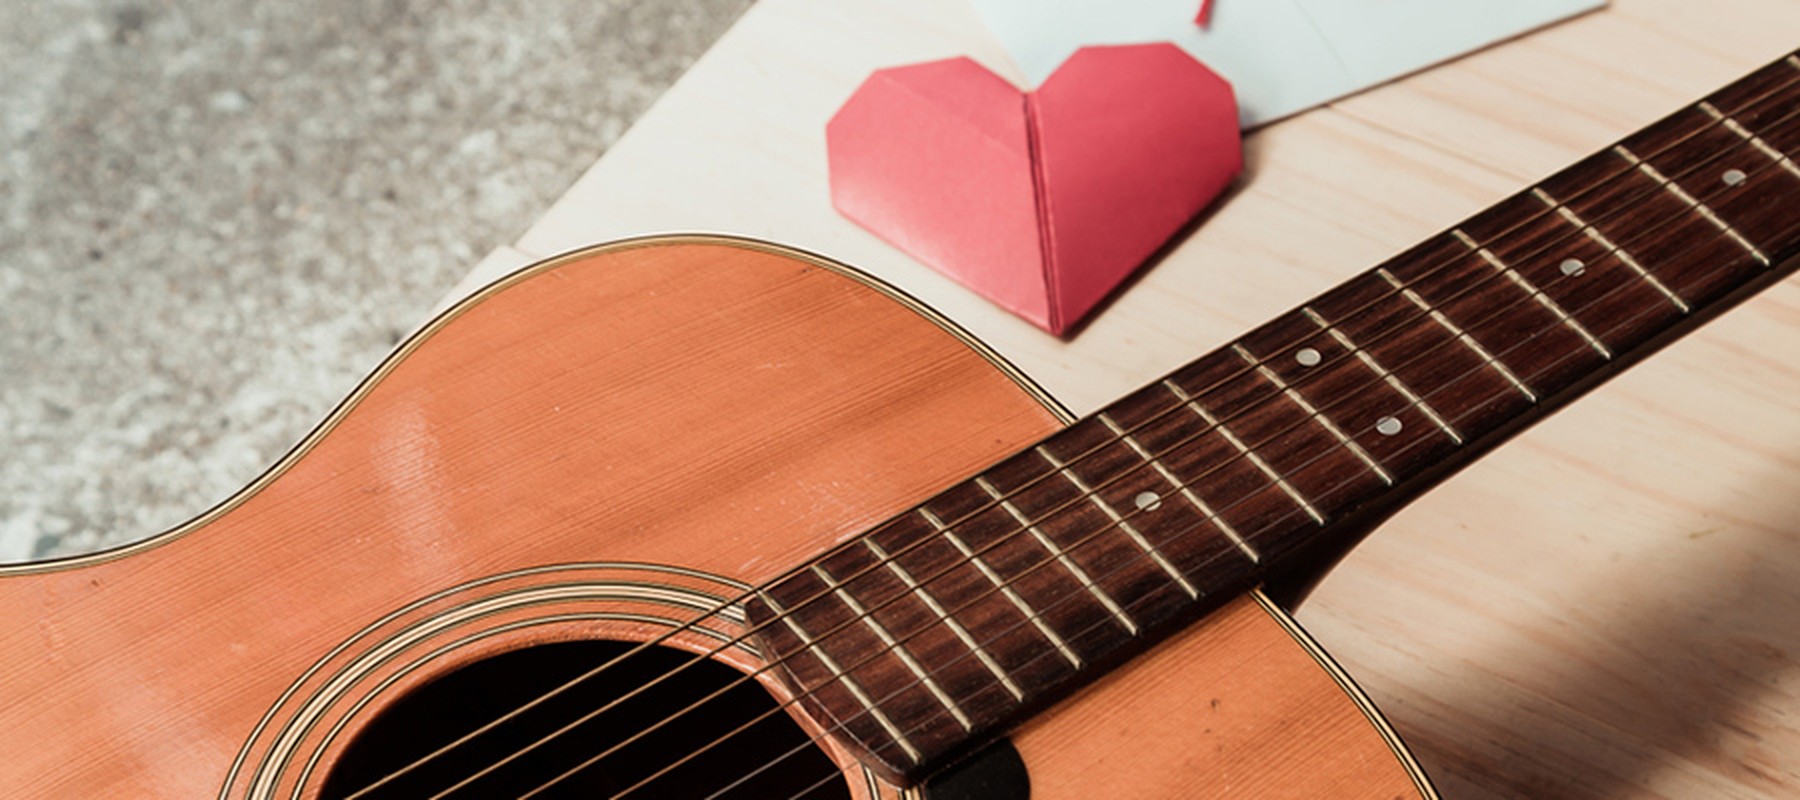 Guitarra sobre una mesa donde se encuentra también un corazón de papiroflexia en color rojo